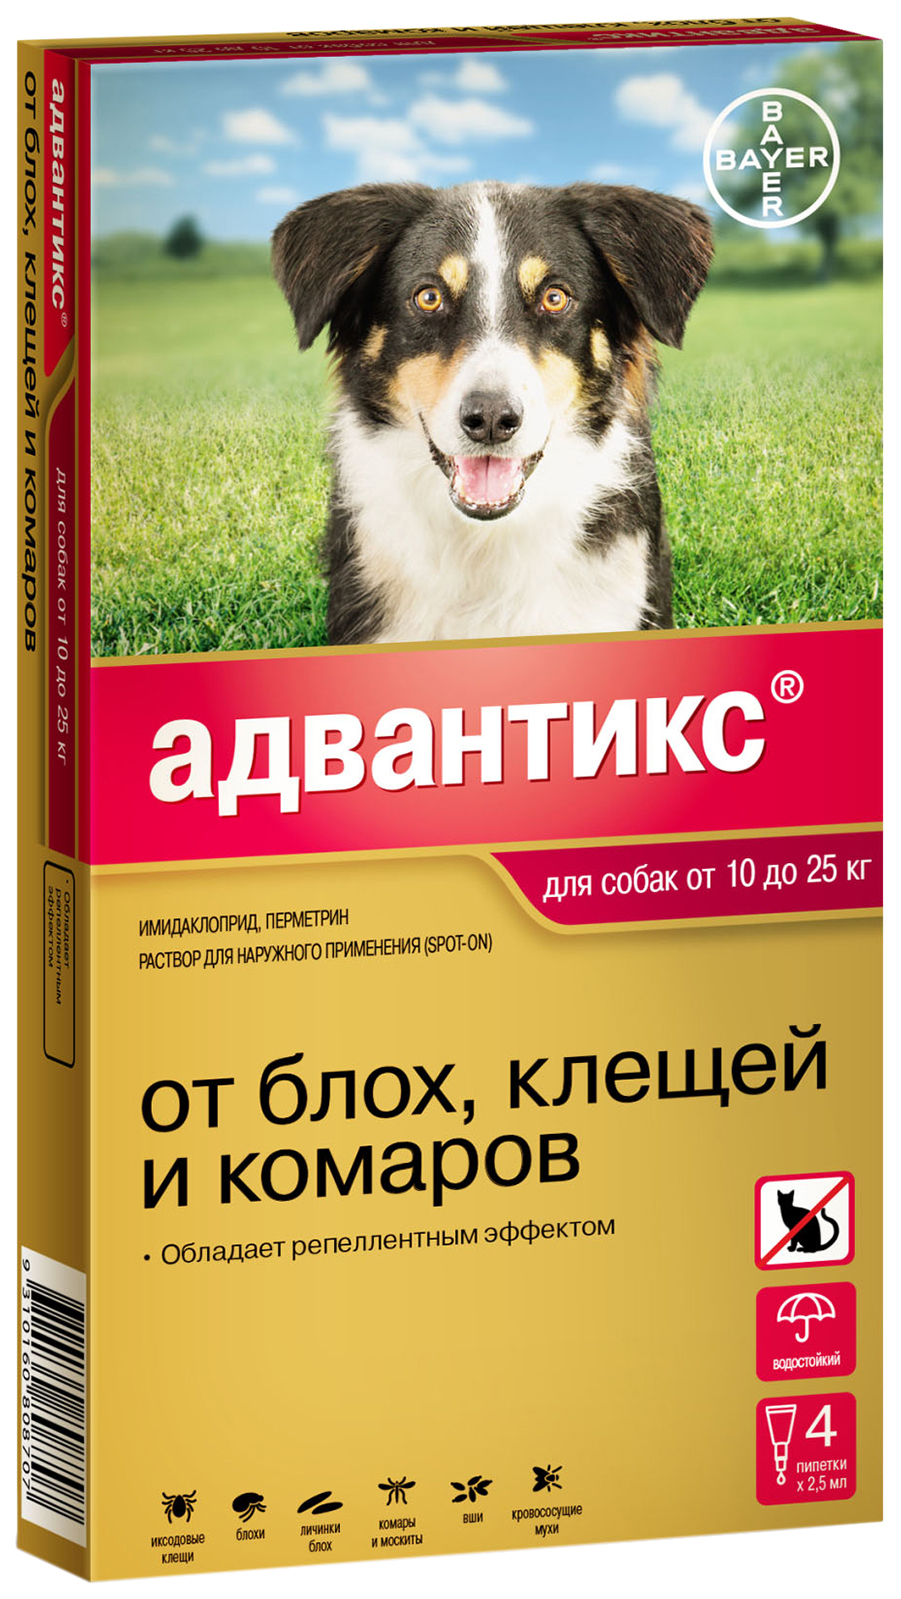 Капли для собак от блох клещей и комаров Bayer Адвантикс, массой 10-25 кг, 2,5 мл, 4 шт